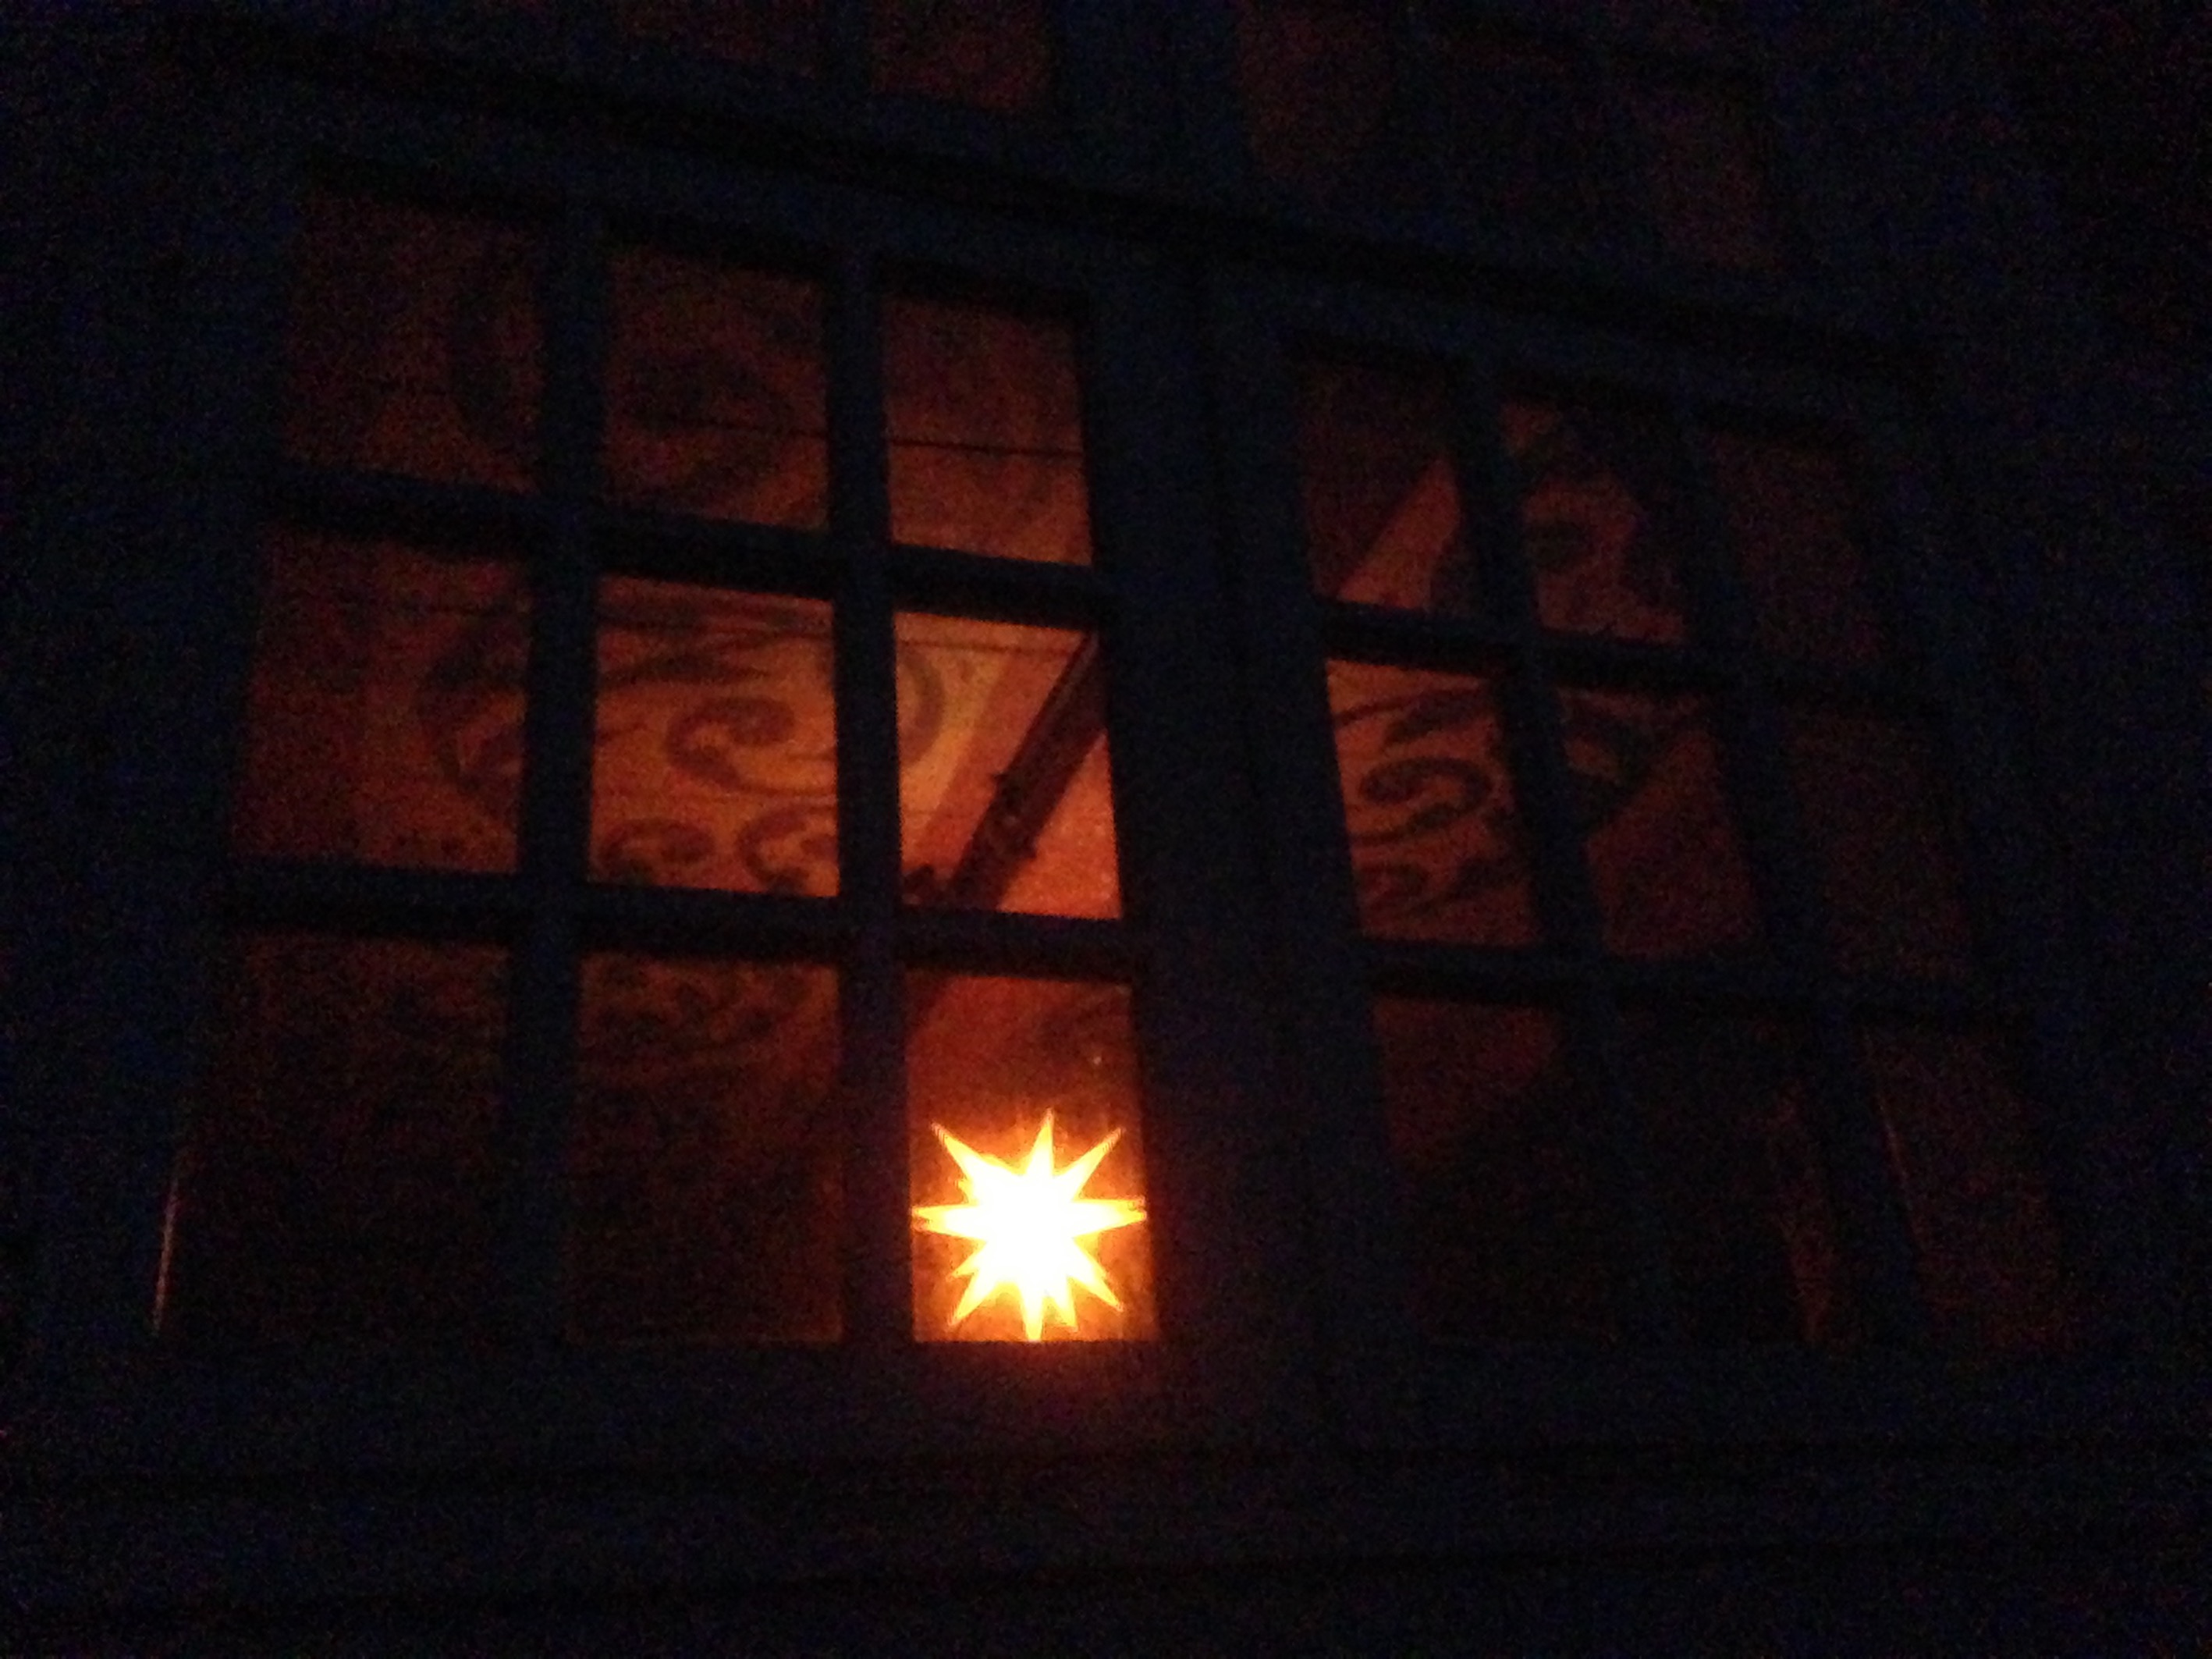 Nächtlicher Blick durch ein Fenster auf einen weihnachtlichen Leuchtstern, der eine bemalte Decke erhellt